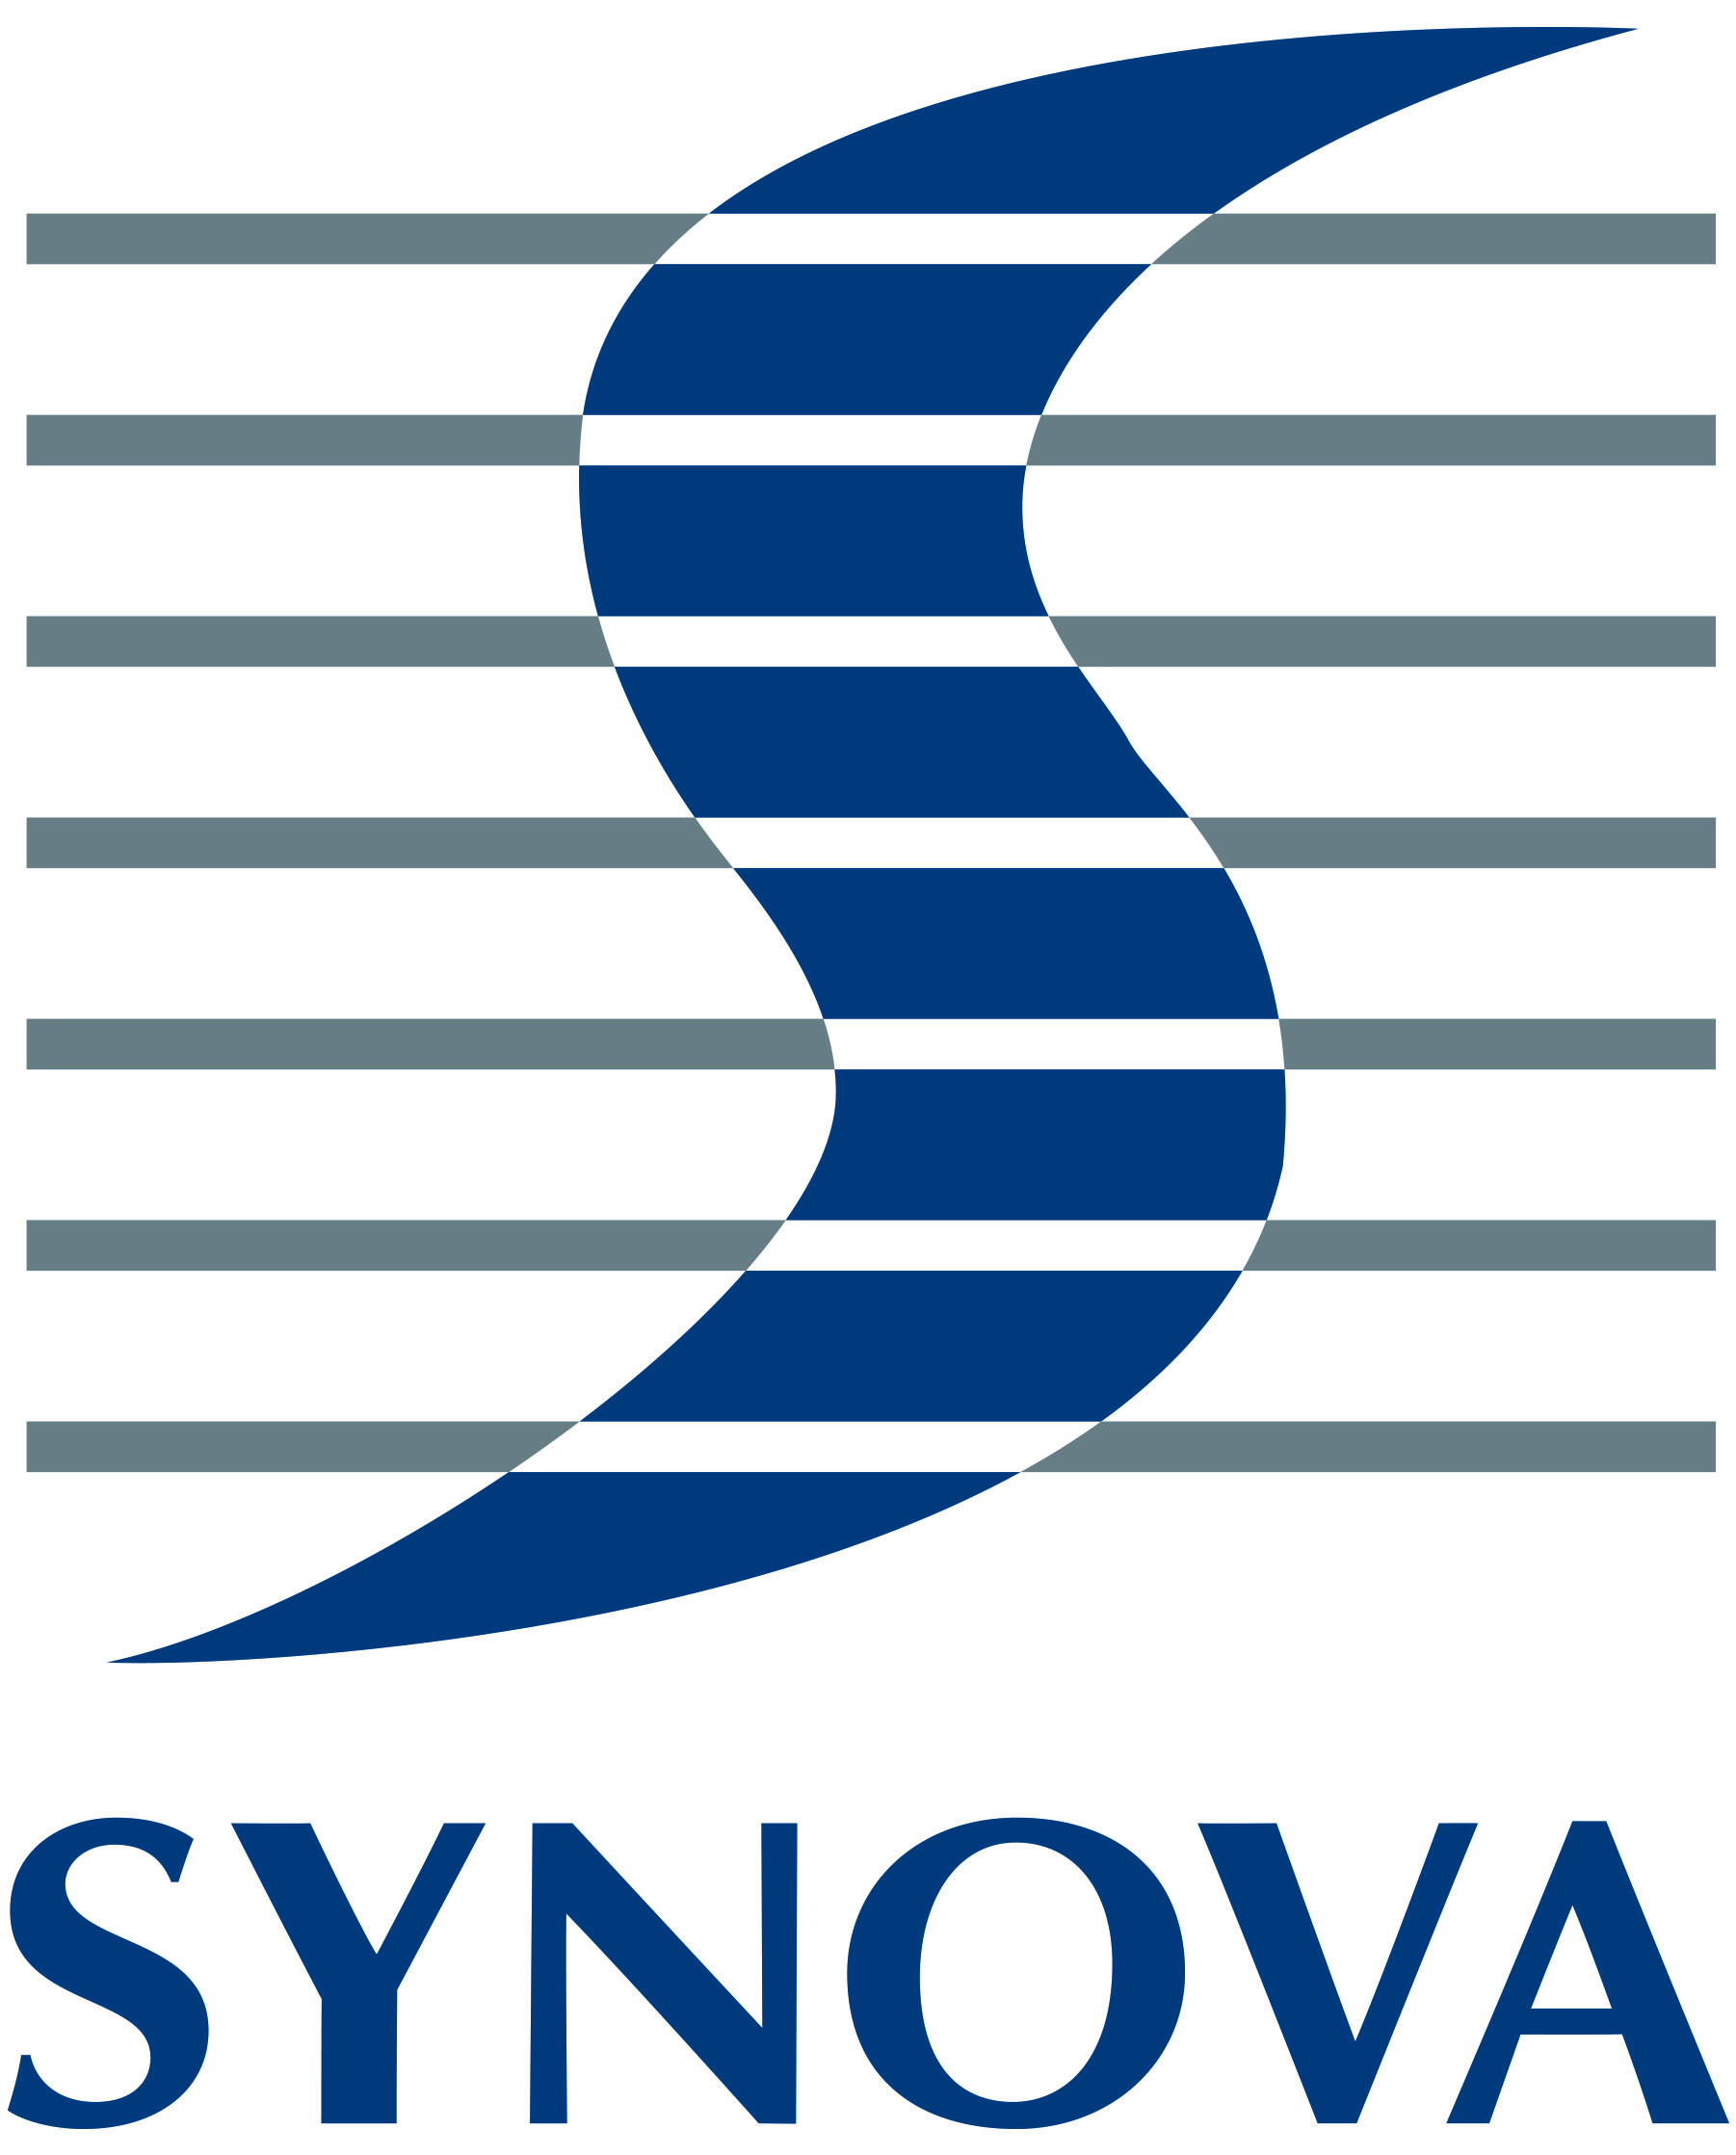 Description: Description: SYNOVA S.A